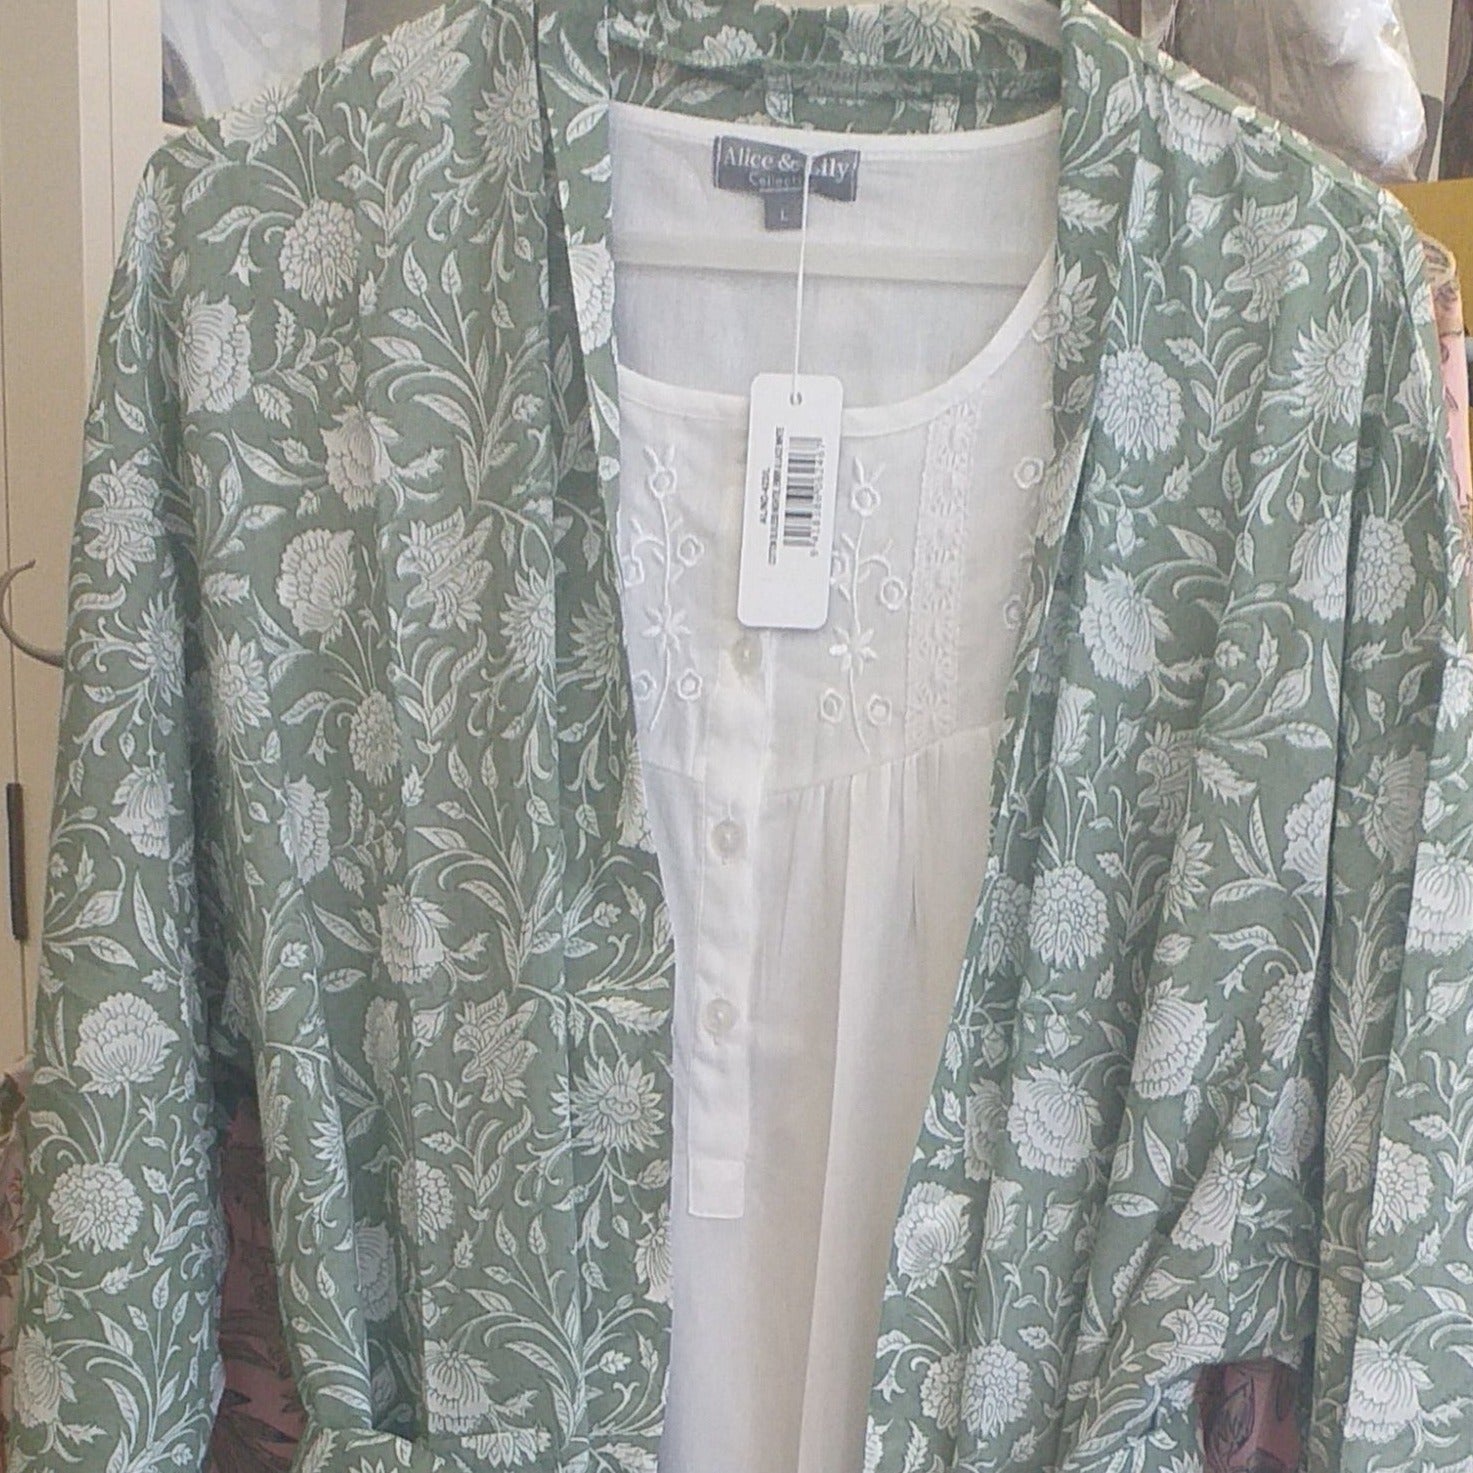 Green floral cotton kimono